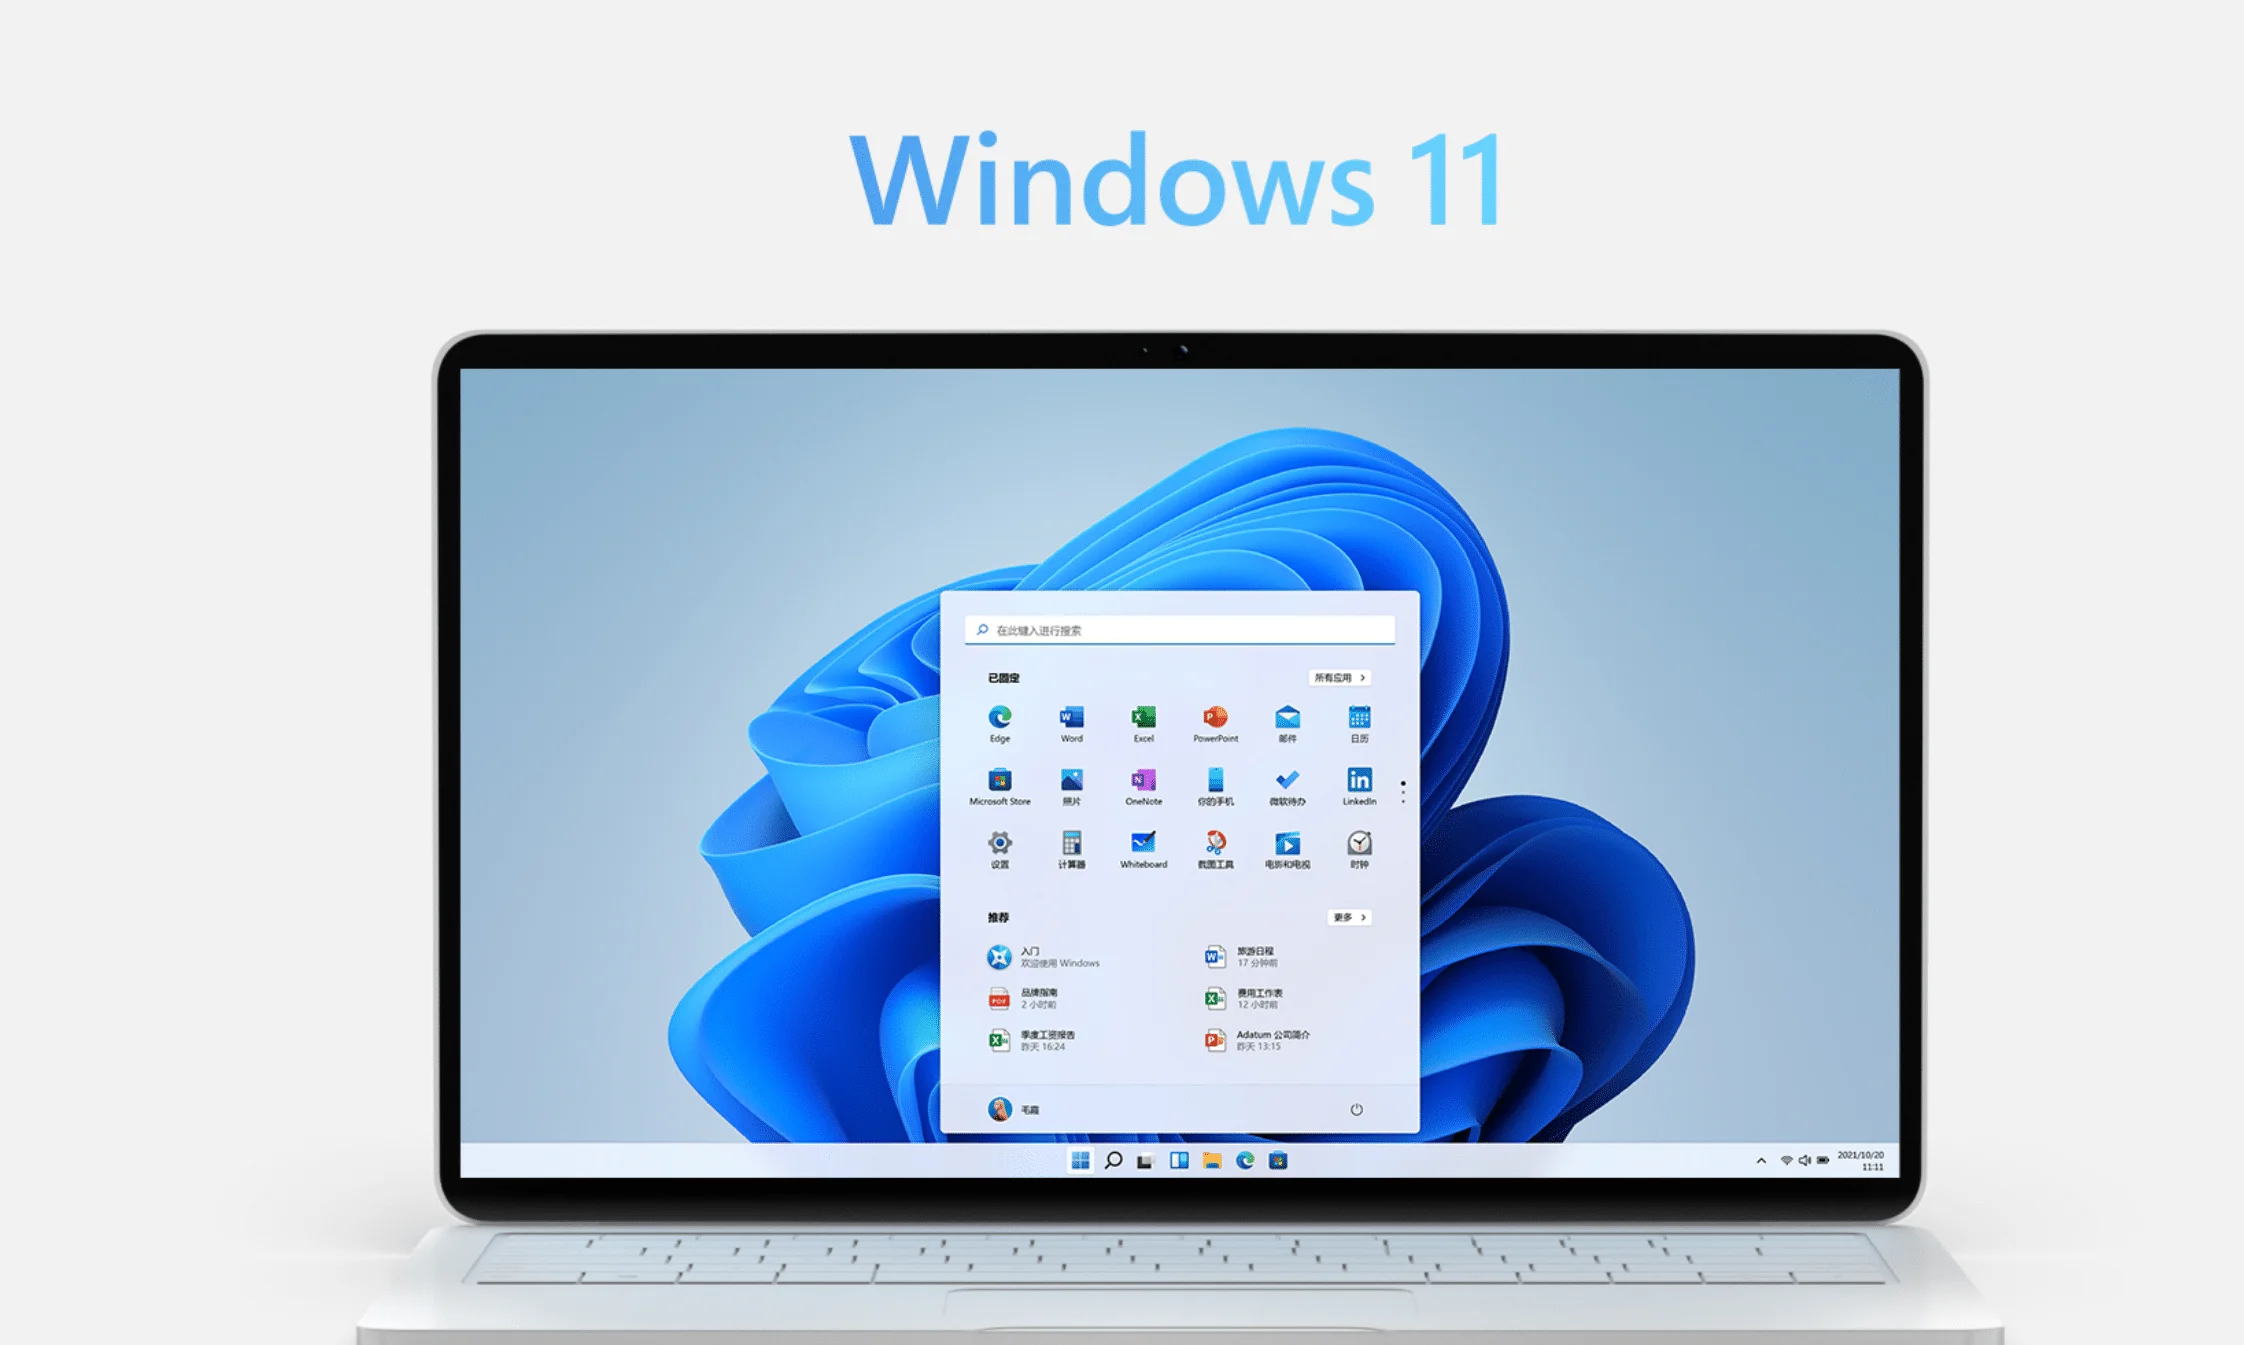 【正版特惠】Windows 11 家庭版/专业版操作系统 - 果核剥壳